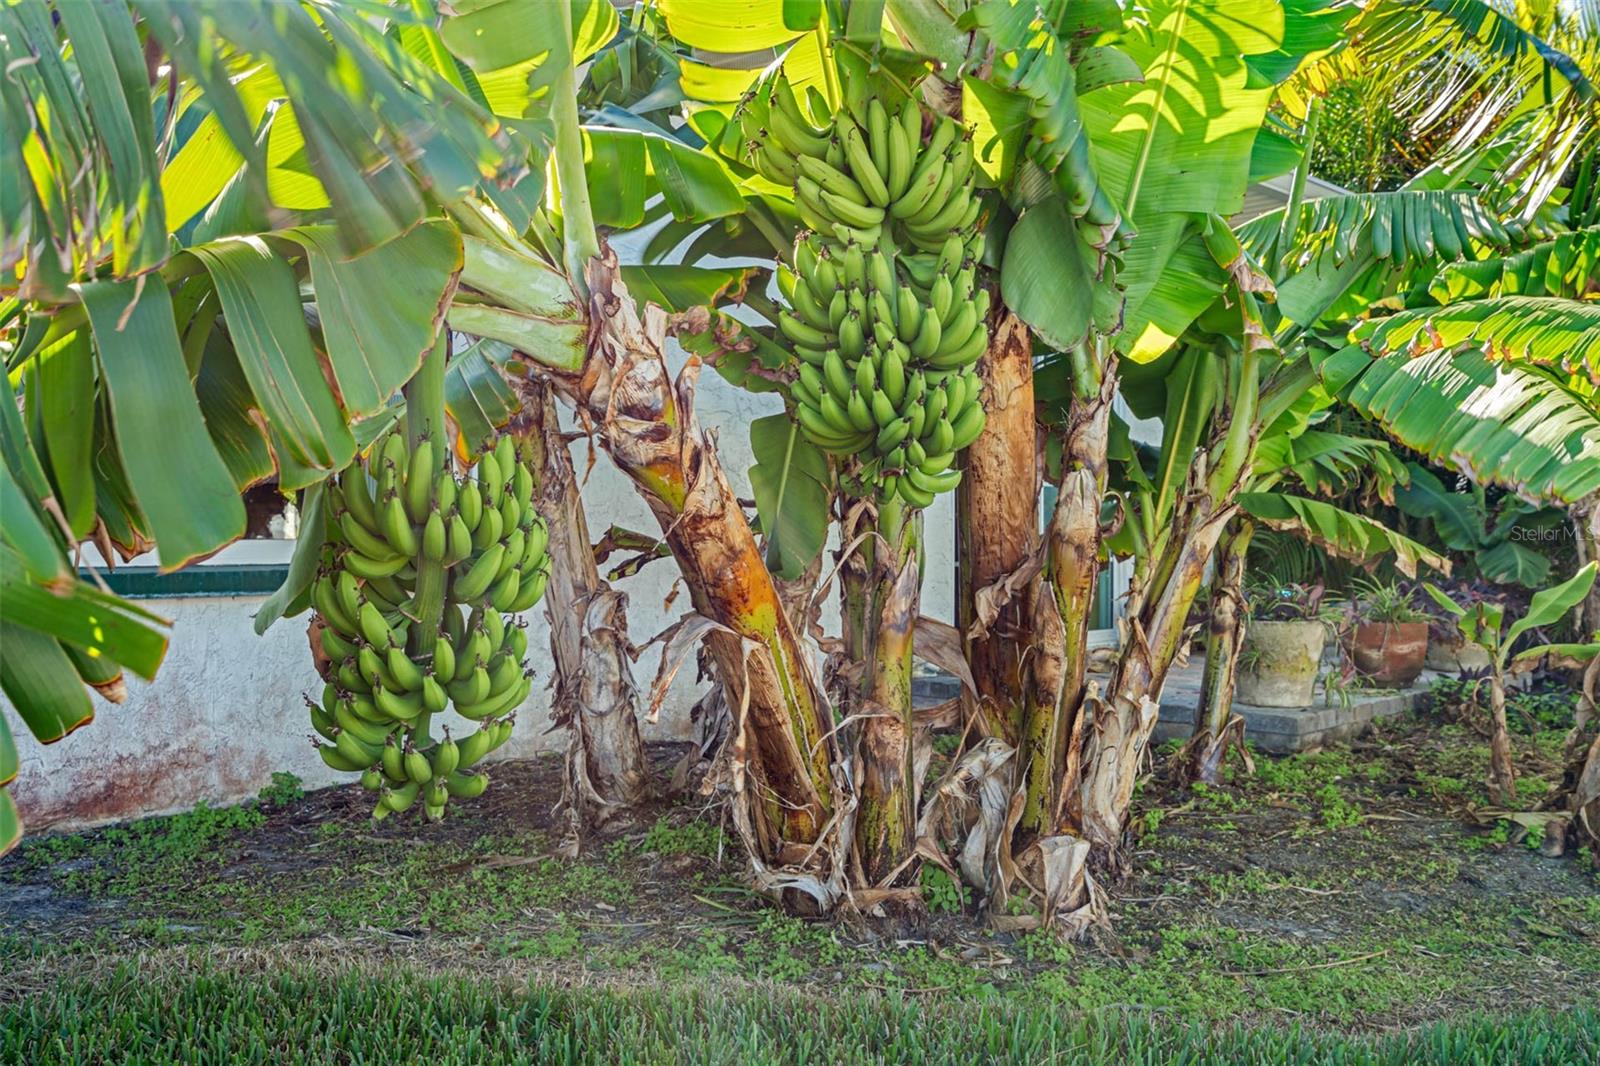 Tropical paradise at home, where banana trees sway and avocado trees flourish.